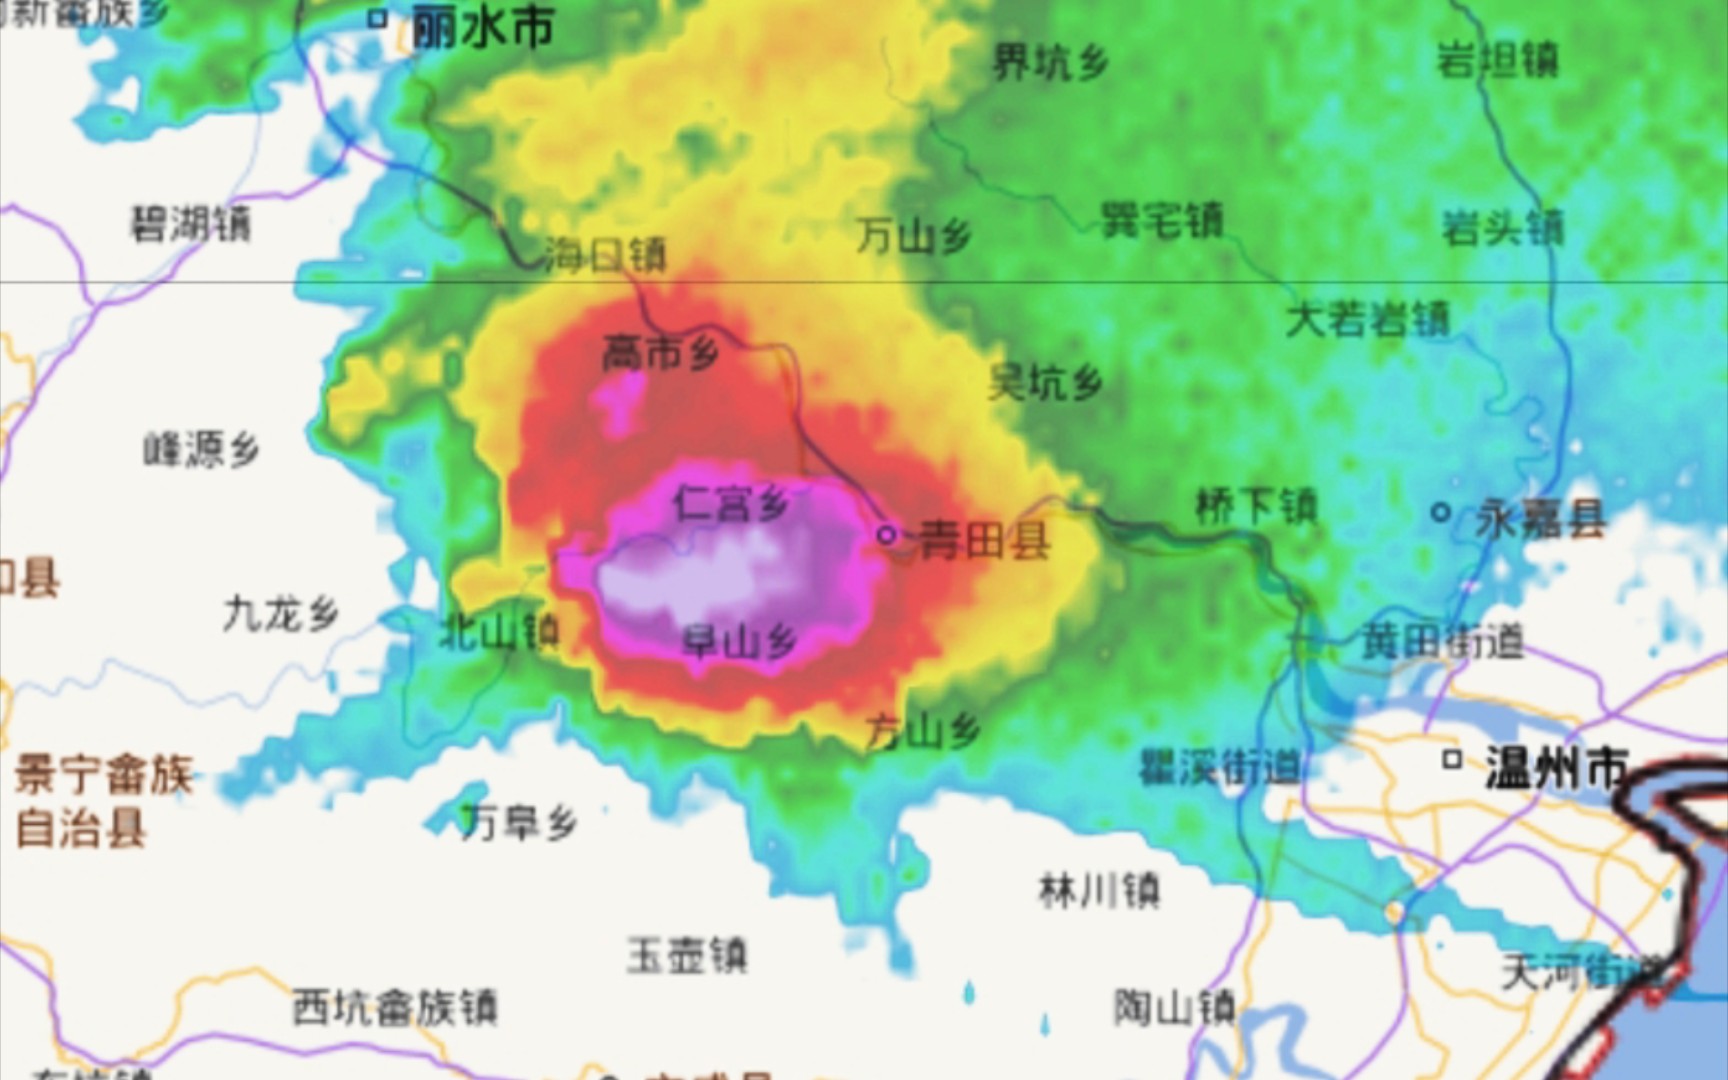 一个从广西桂林跨越上千公里跑到浙江沿海的风暴